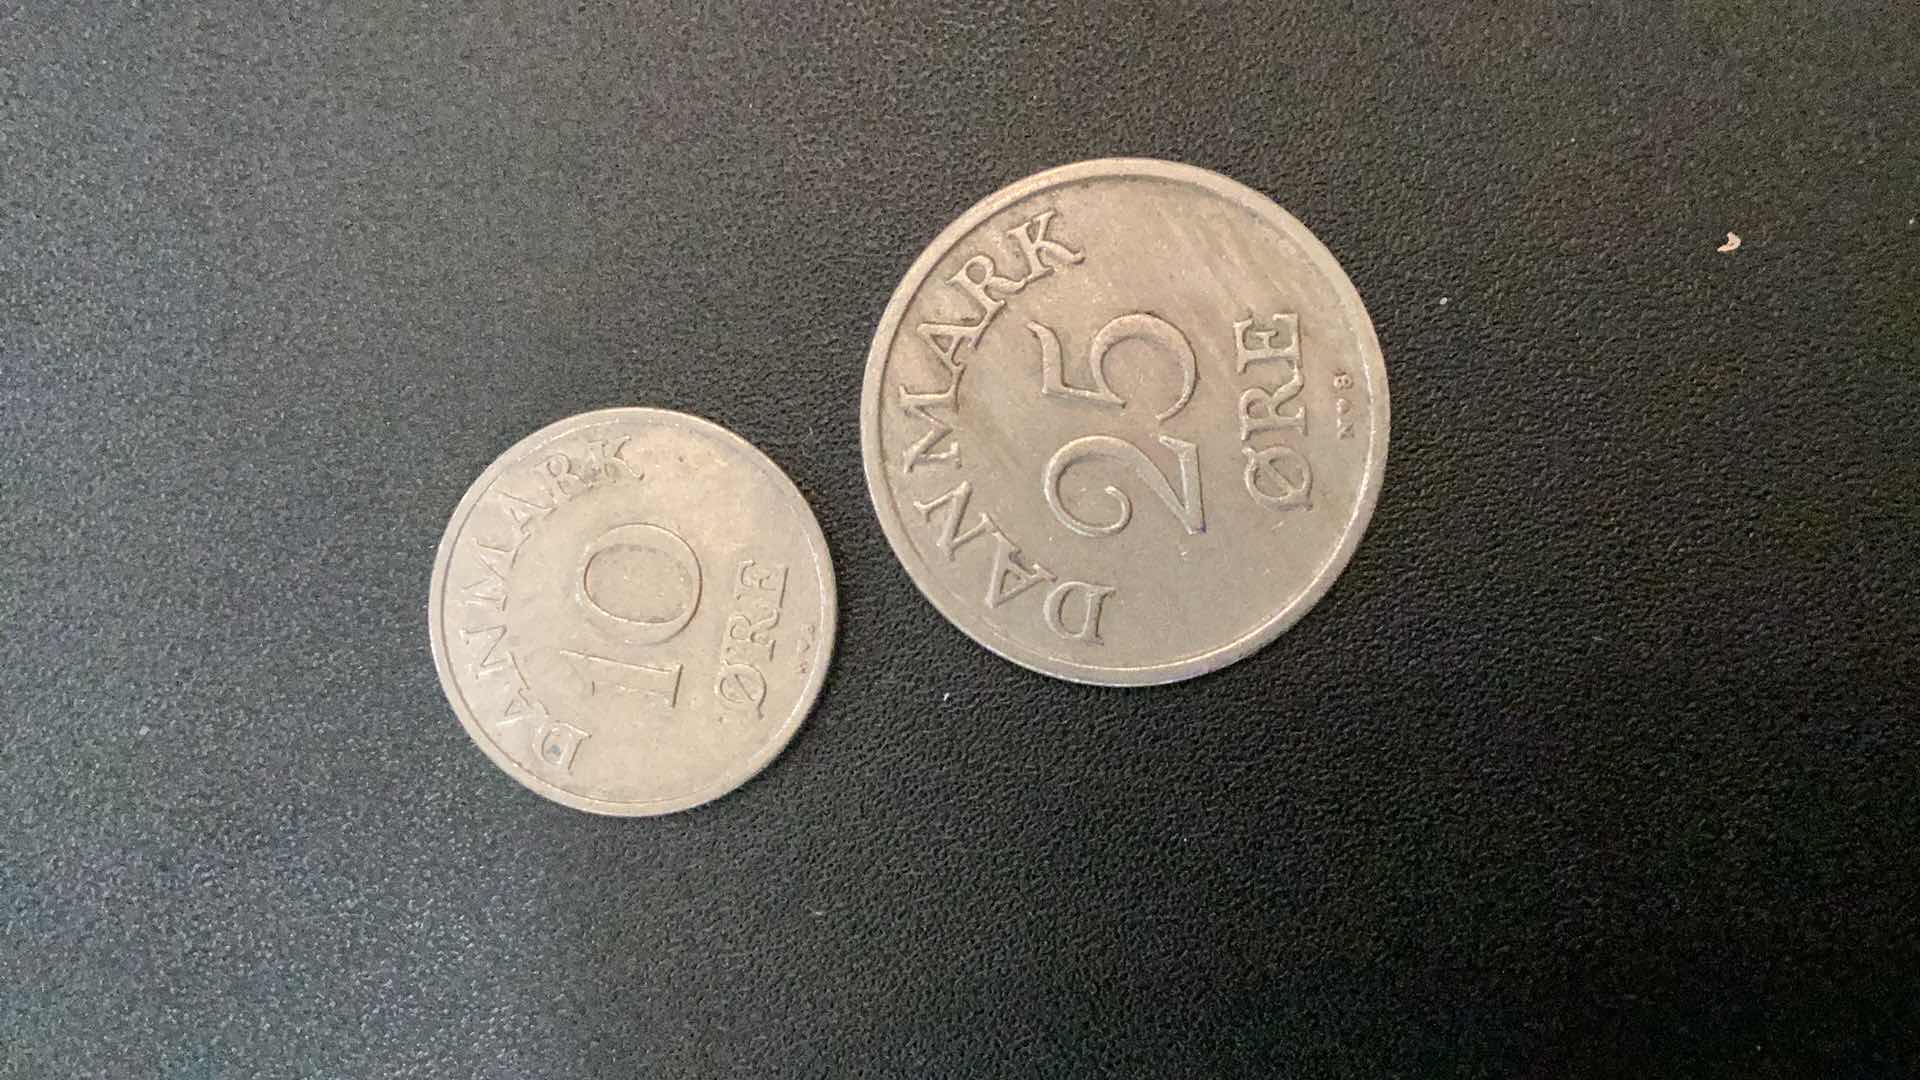 Photo 2 of 2 COLLECTIBLE COINS - DENMARK 1951, 1955